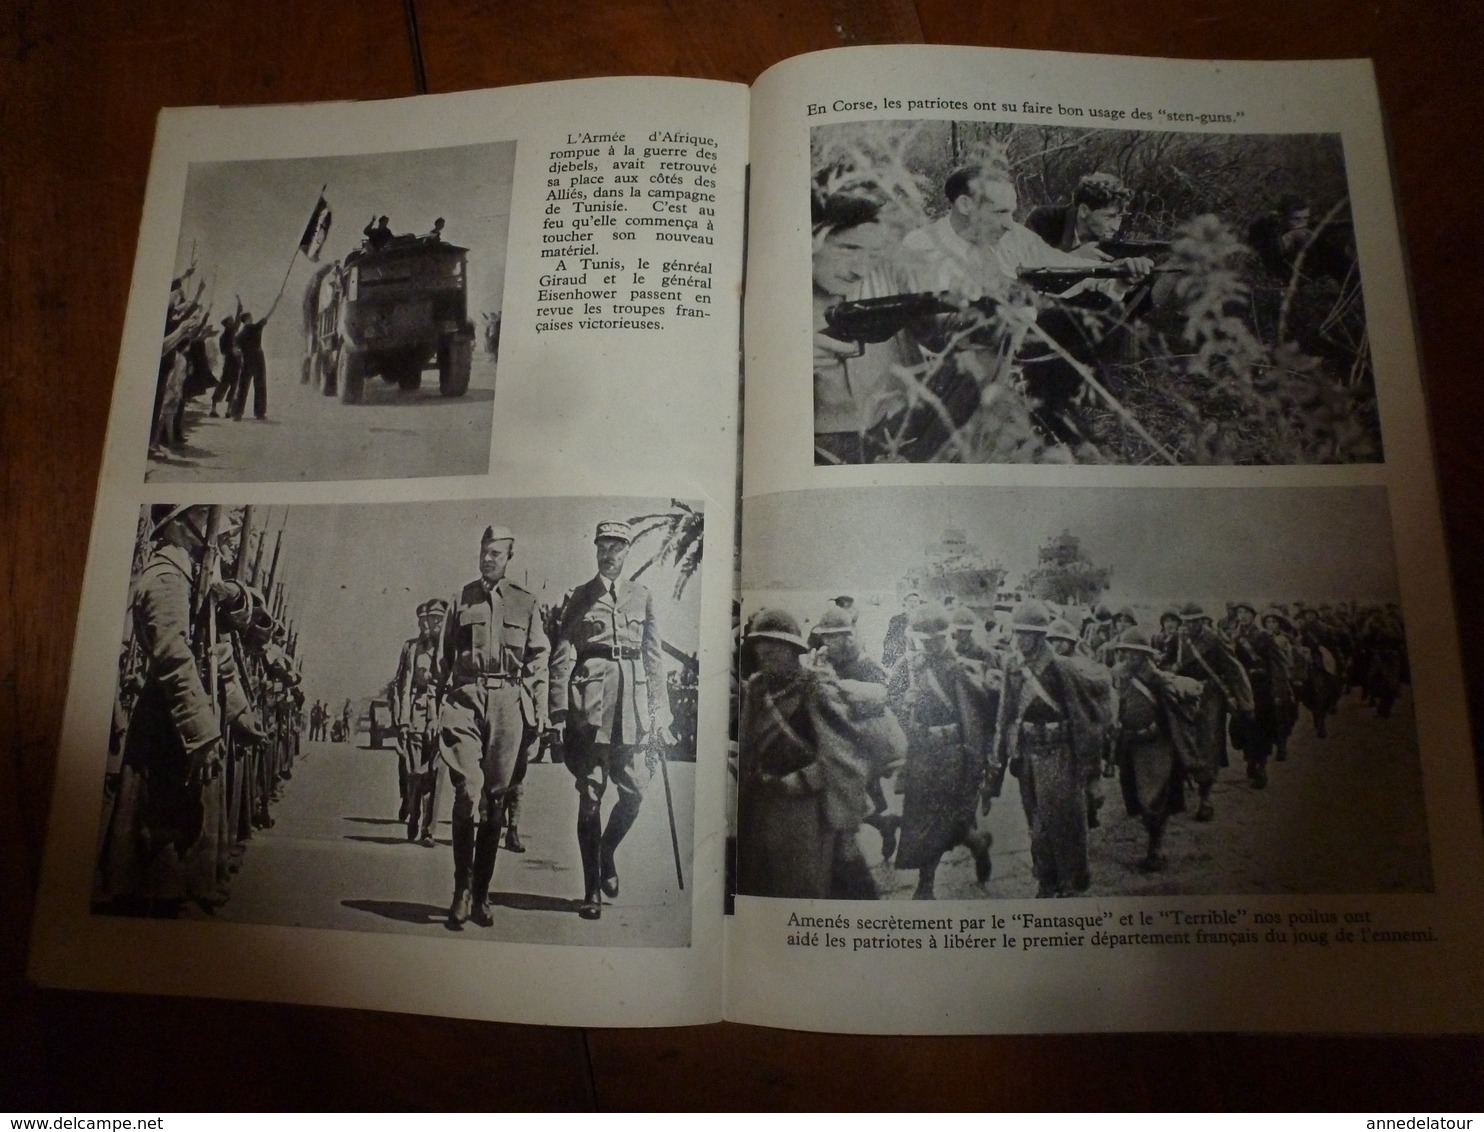 1940  FORMEZ VOS BATAILLONS ,par le général DE GAULLE (document original) - Phrase de Winston Churchill (dernière image)